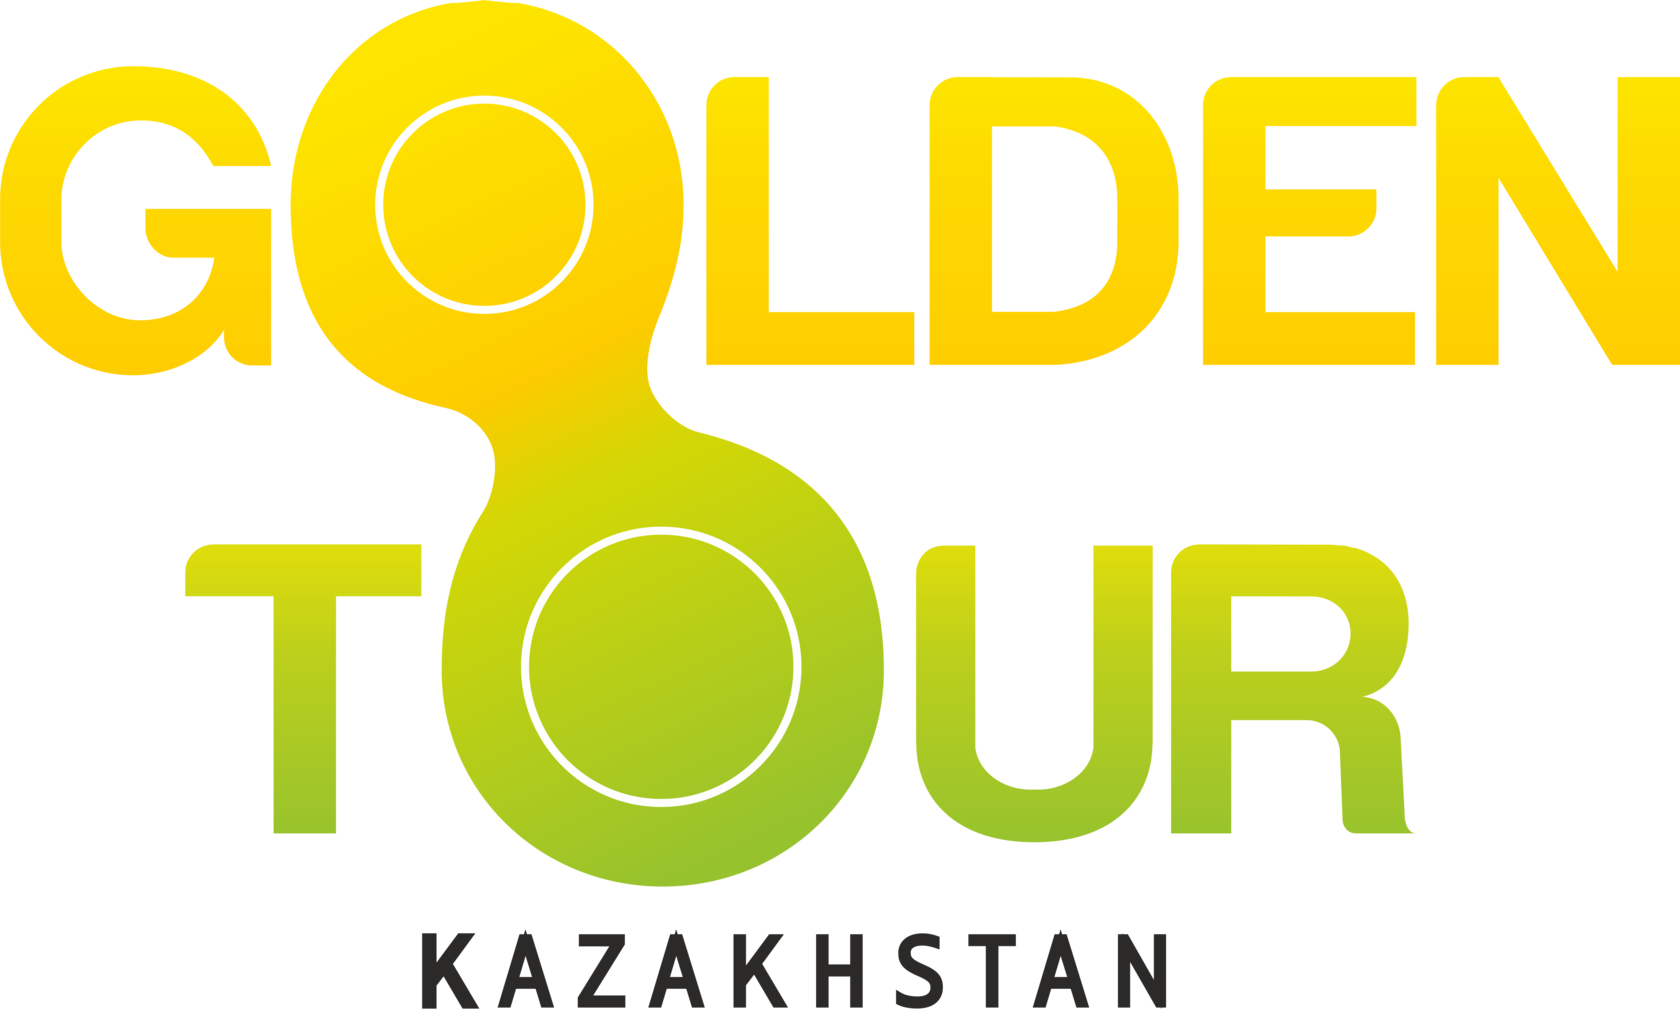  "GOLDEN TOUR KAZAKHSTAN" 